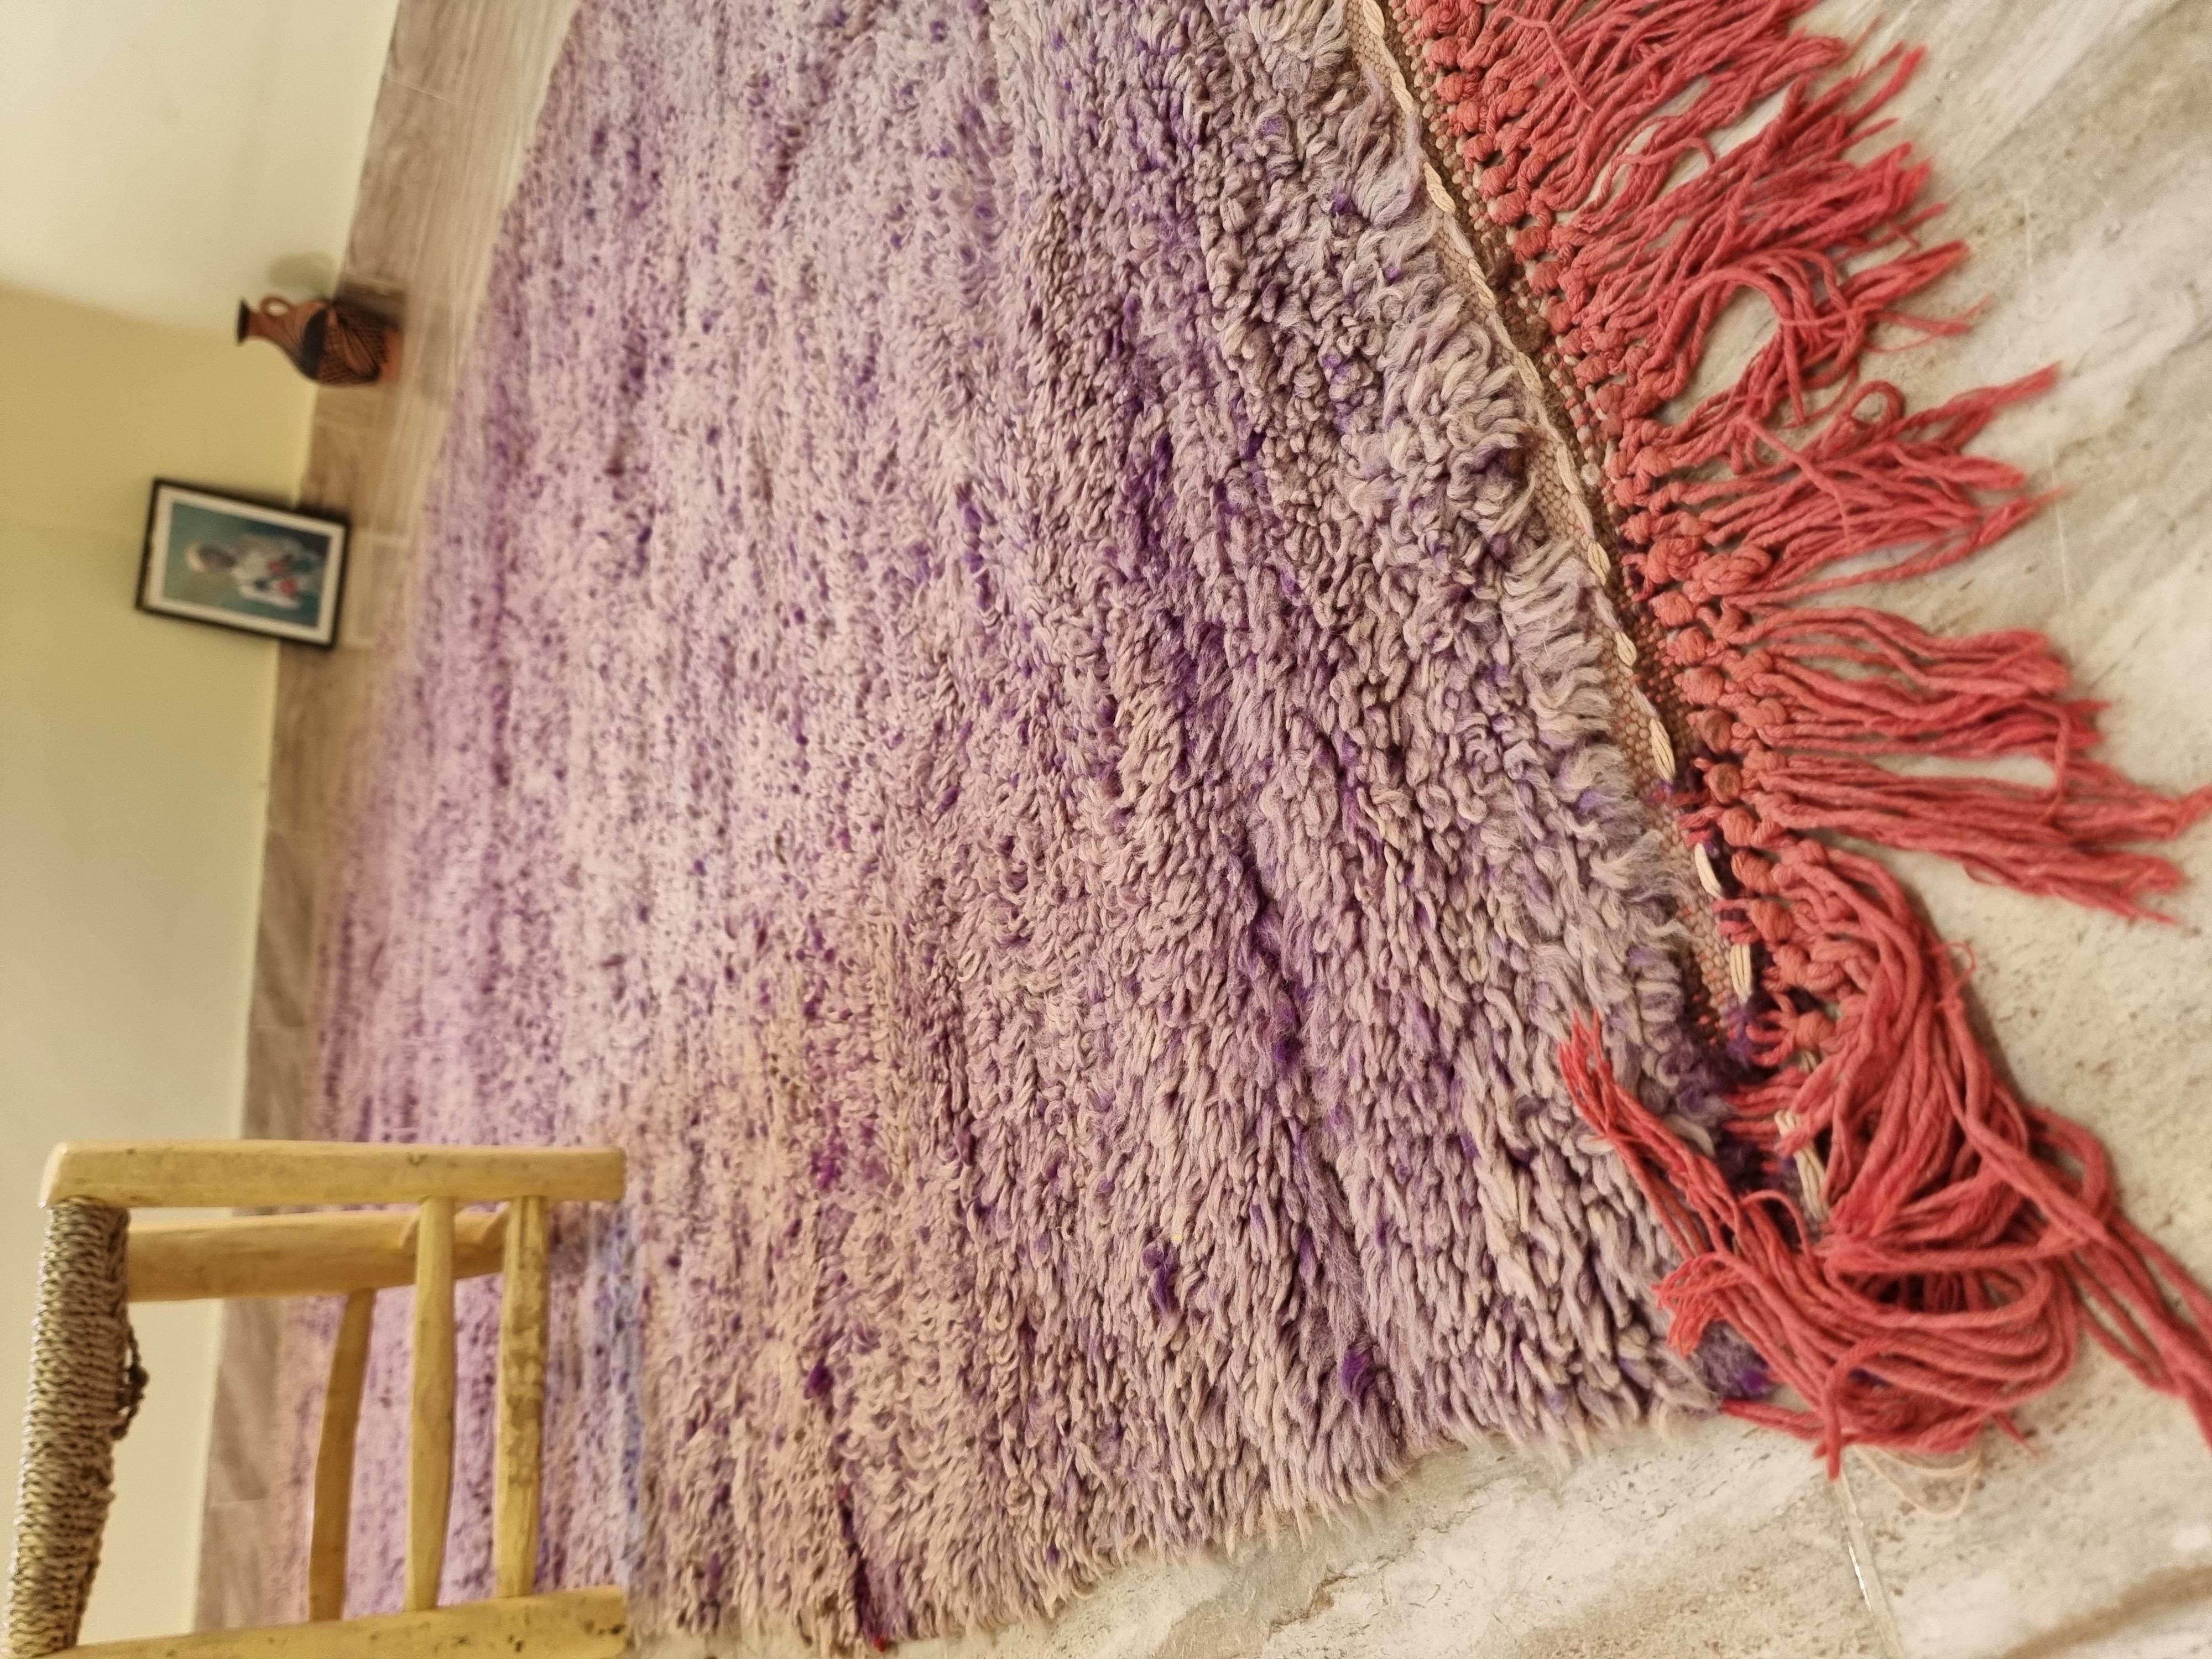 Rare tapis marocain vintage.
Chaque tapis possède son identité unique. Avoir un tapis unique à la maison avec une belle histoire représente une vie remplie d'antécédents historiques et significatifs. Chacun de nos tapis nécessite de longues heures